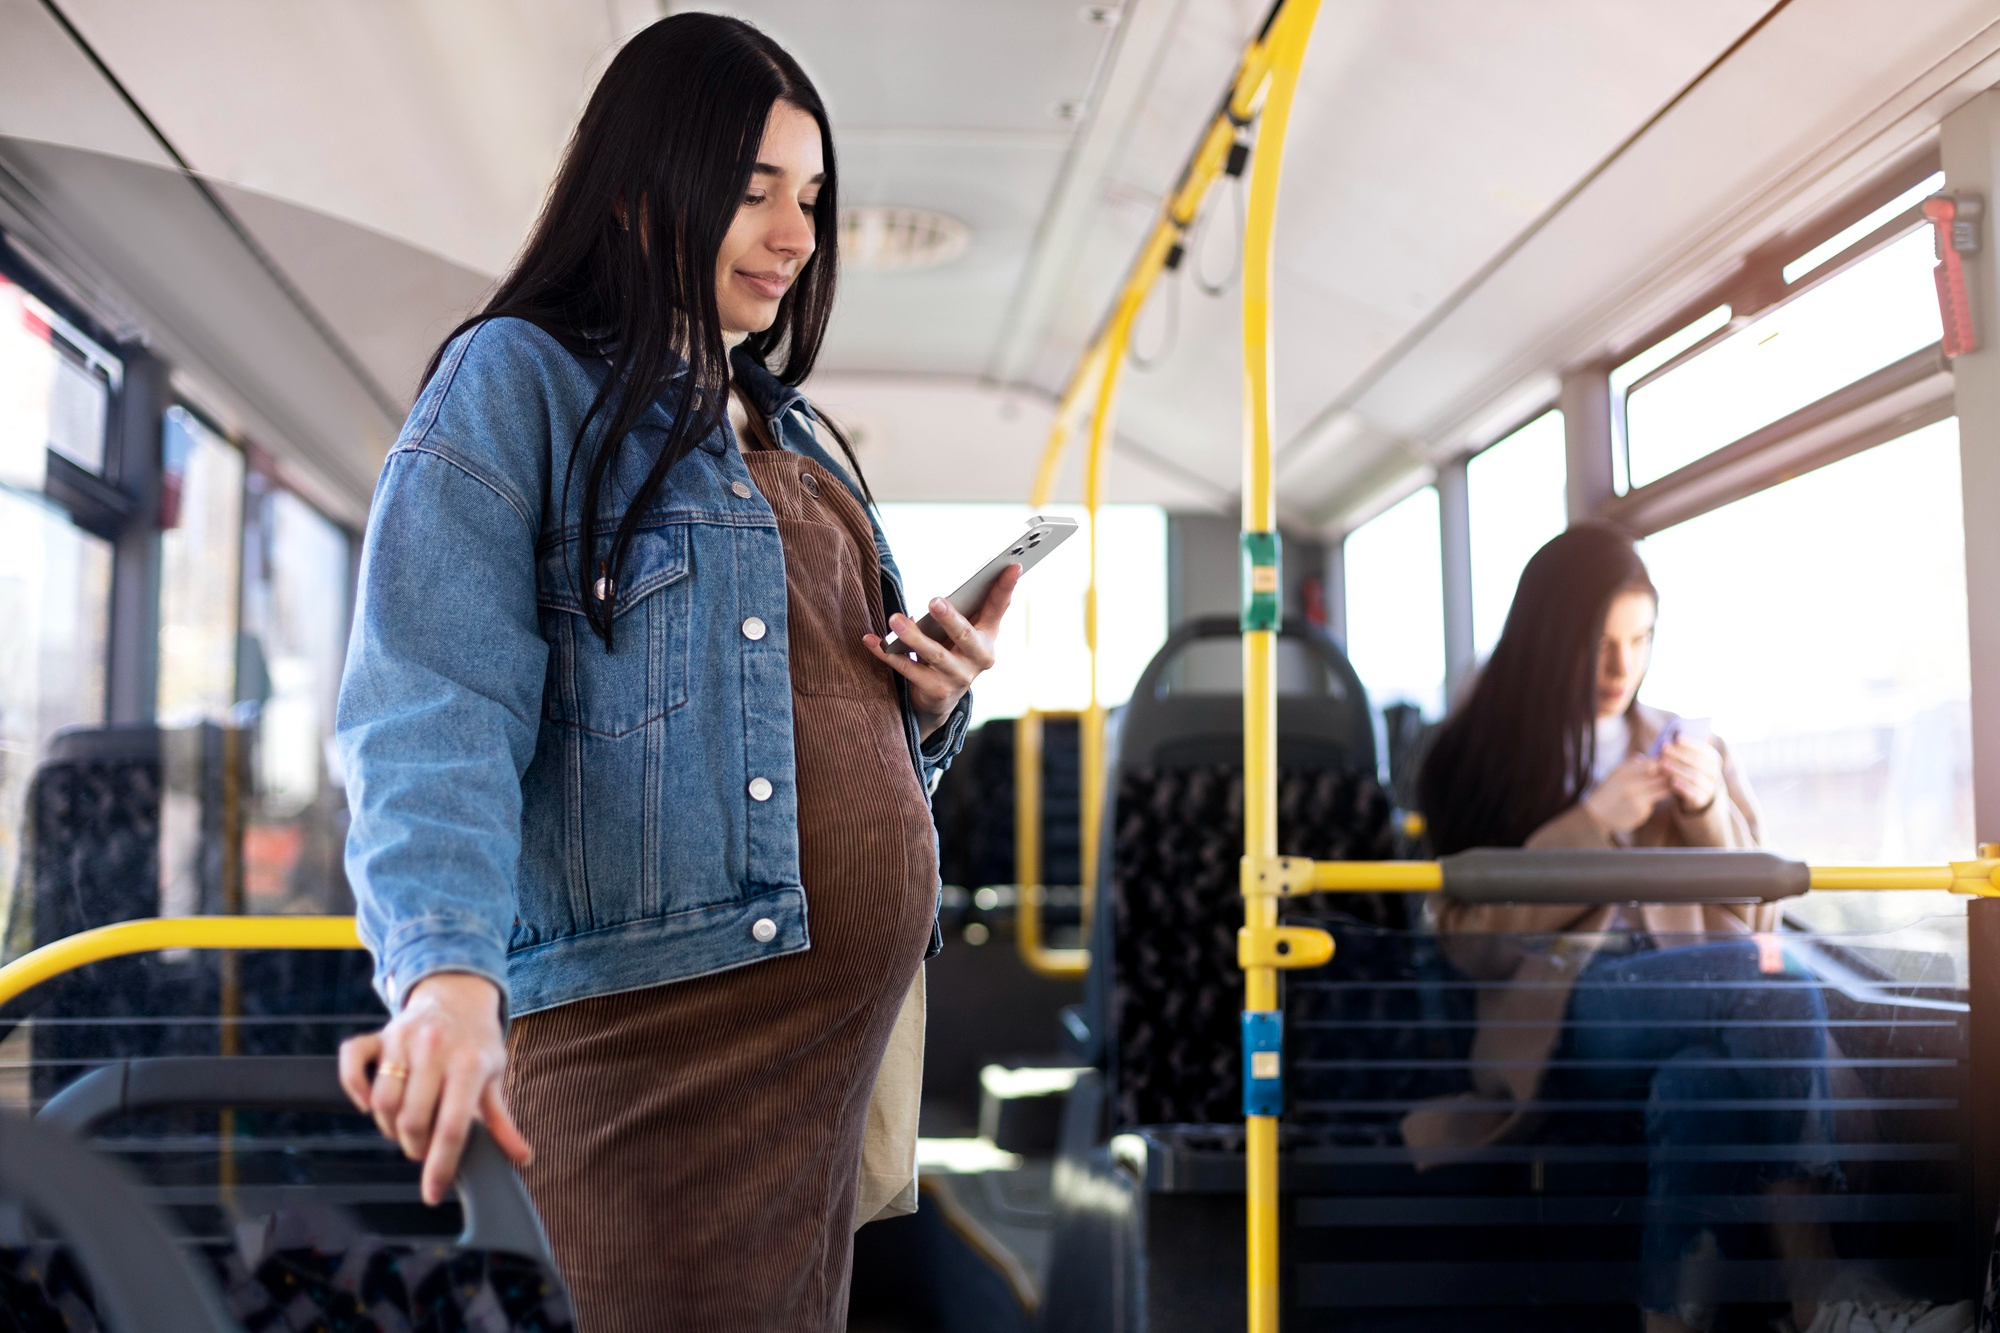 A pregnant woman traveling by bus | Source: Freepik